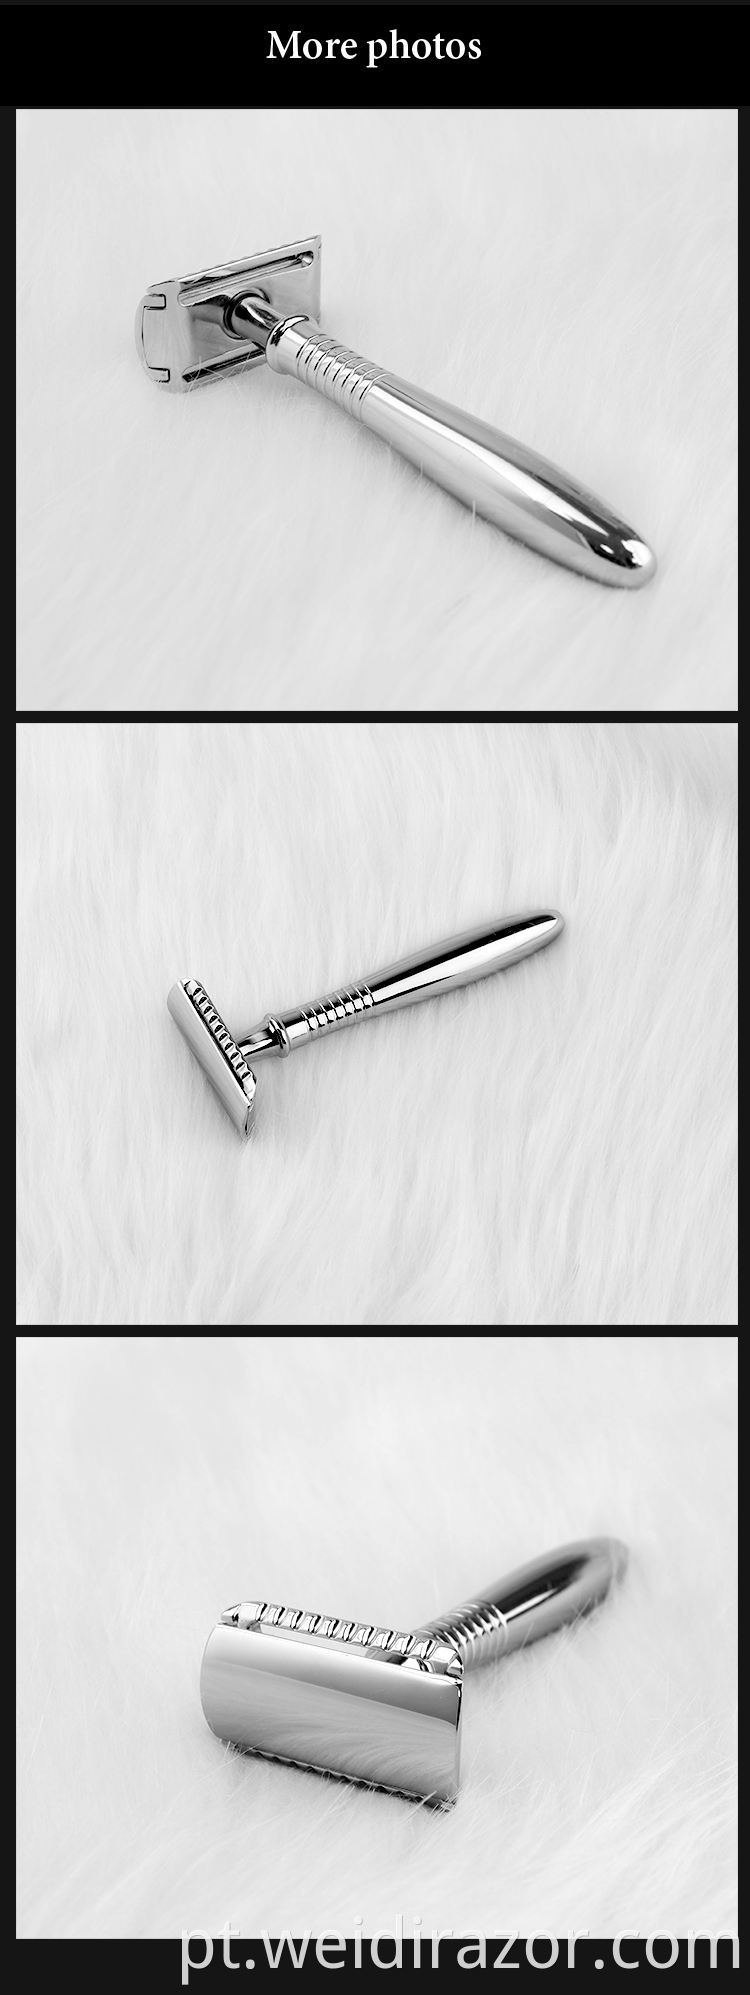 Lâmina de segurança de borda dupla, kit de barbear úmido clássico de cabo longo para homens e mulheres com lâminas de barbear de reposição